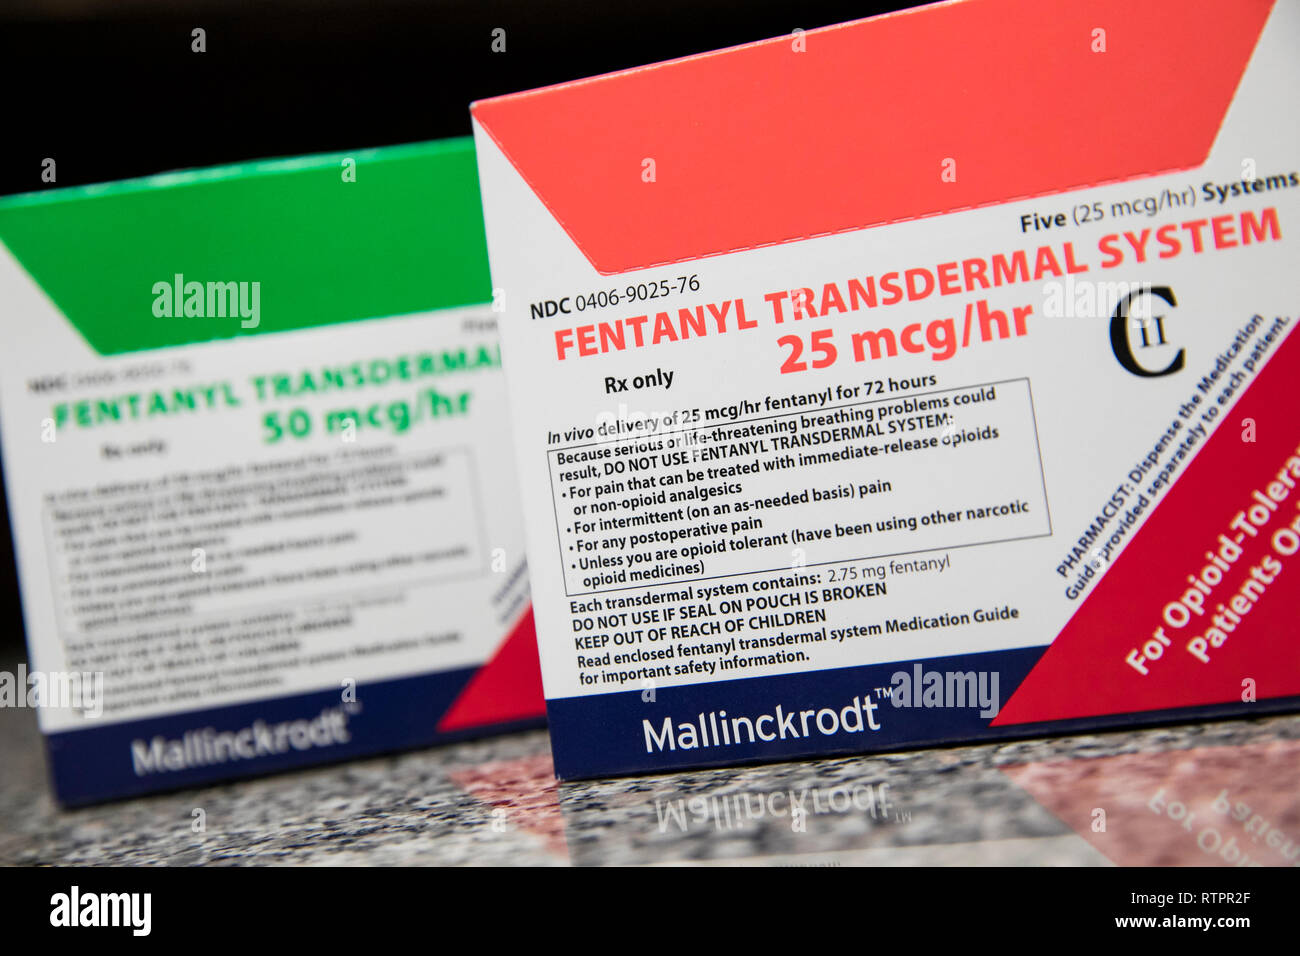 Pacchetti di fentanil prescription pharmaceuticals fotografato in una farmacia. Foto Stock